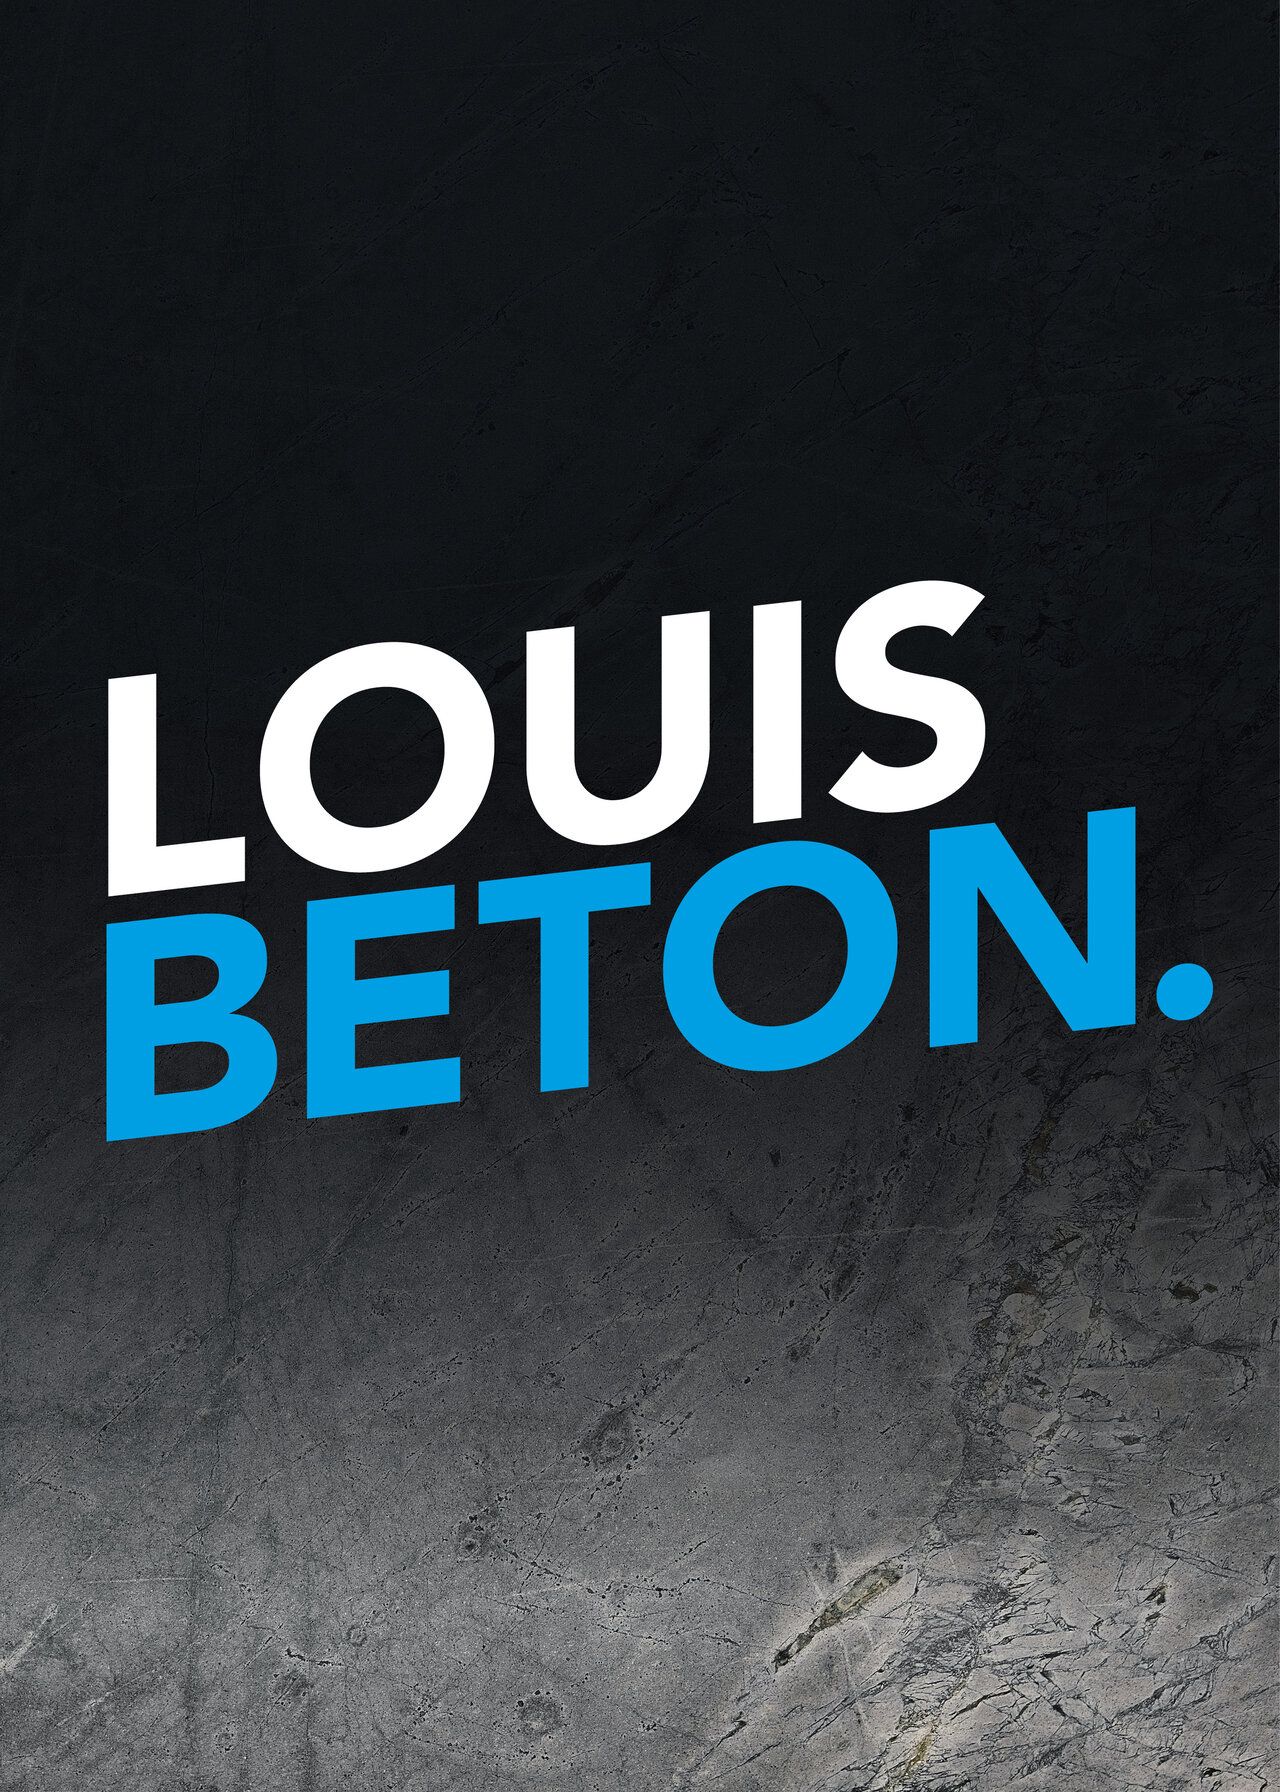 Dunkler Hintergrund. Der Text "Louis Beton." in weißer und blauer Schrift.